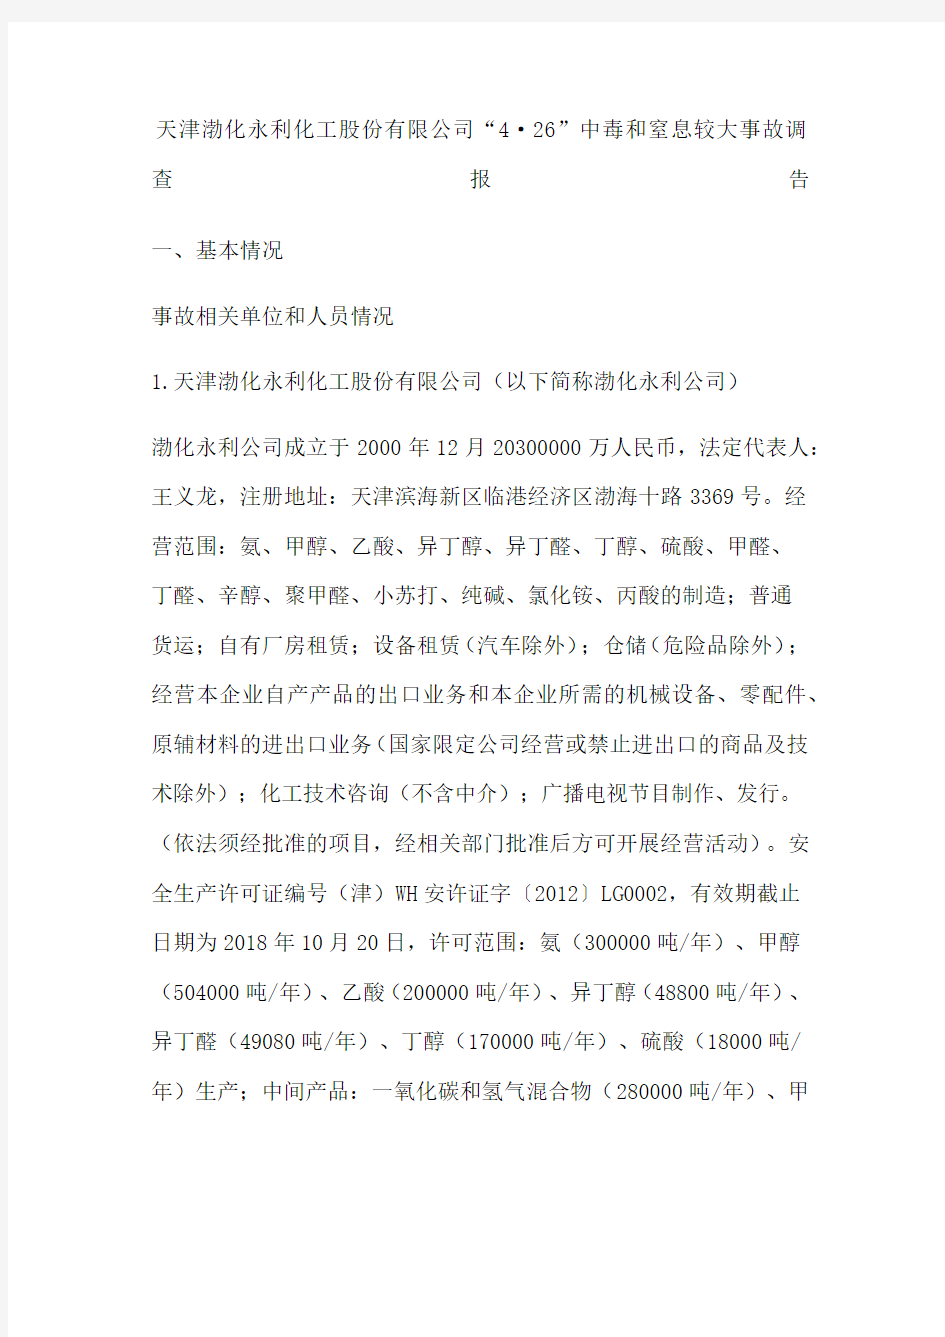 天津渤化永利化工股份公司“”中毒和窒息较大事故调查报告